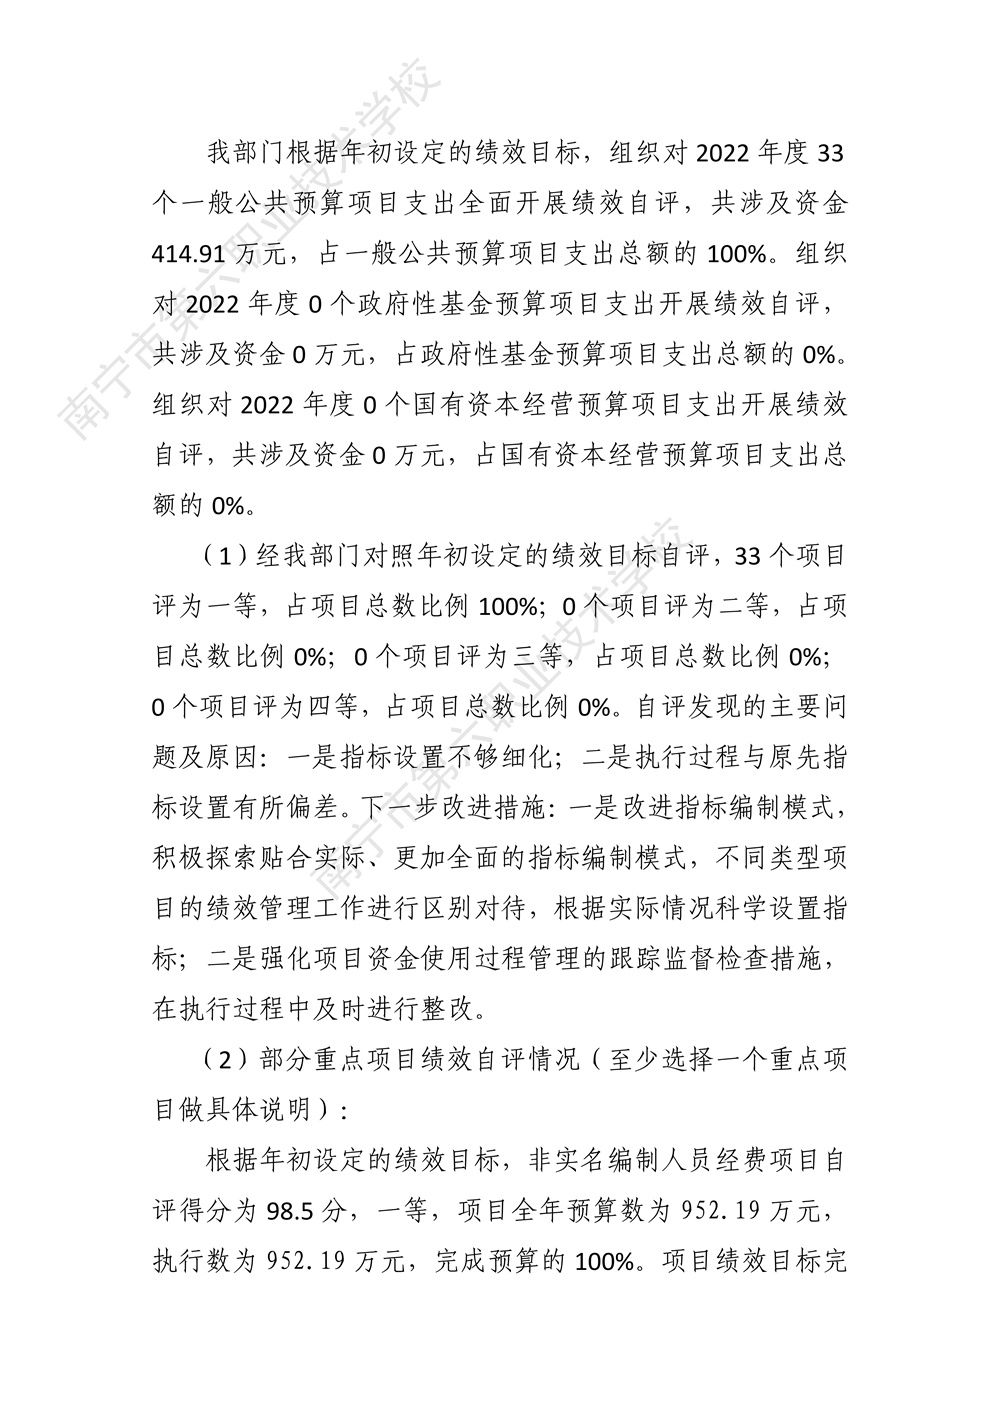 南宁市第六职业技术学校2022年度部门决算公开（终版）_35.jpg